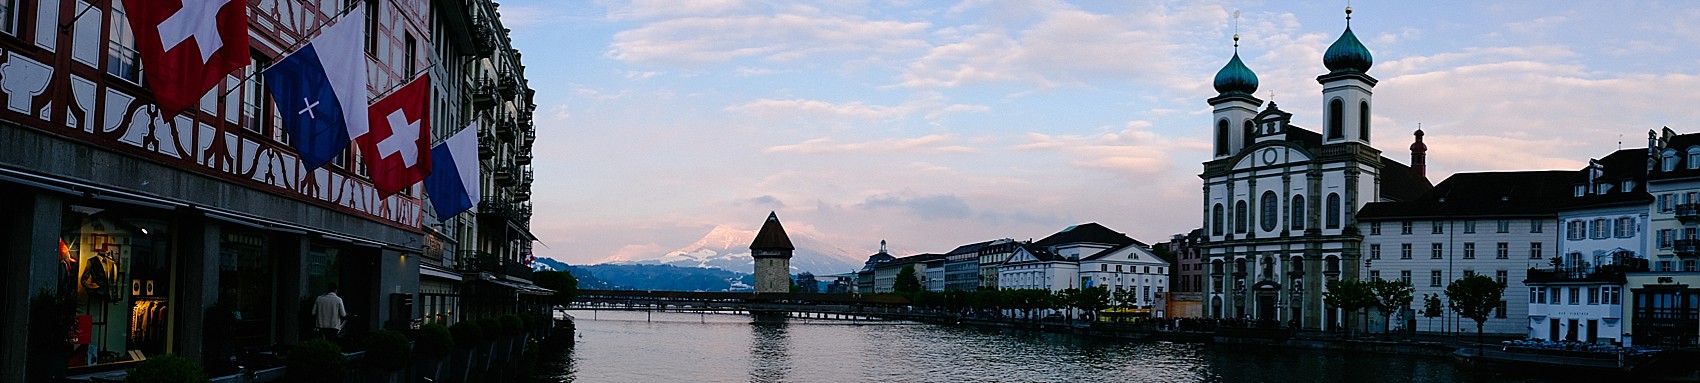 Lucerne Switzerland Travel tips